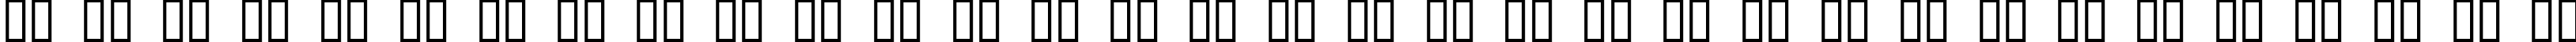 Пример написания русского алфавита шрифтом Bold